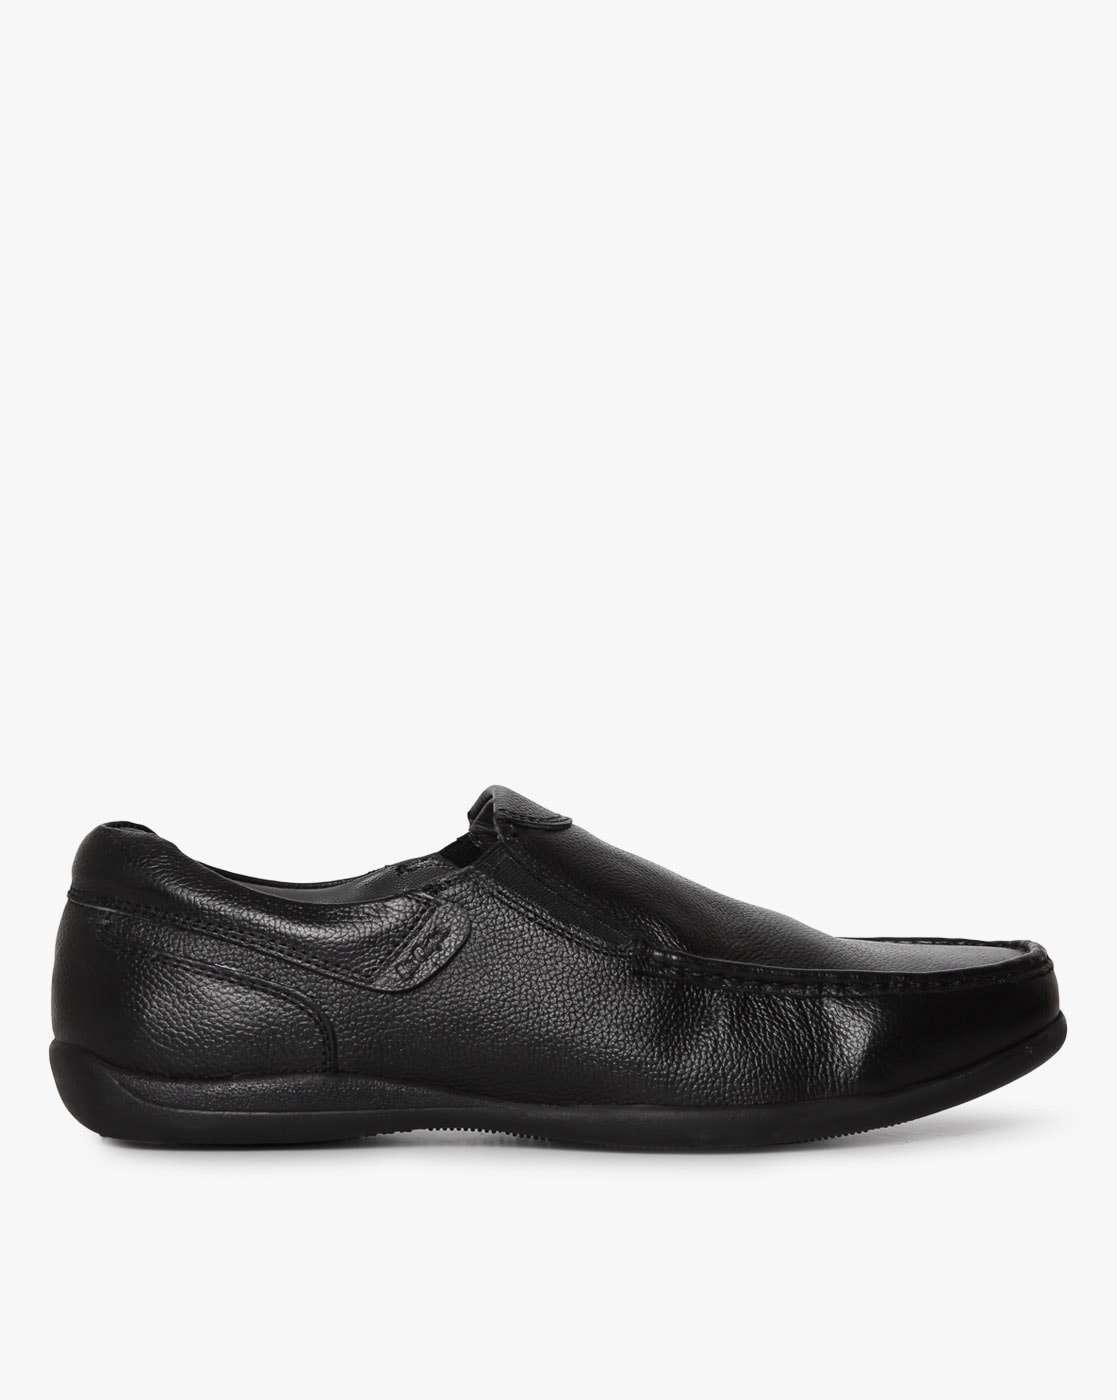 lee formal shoes